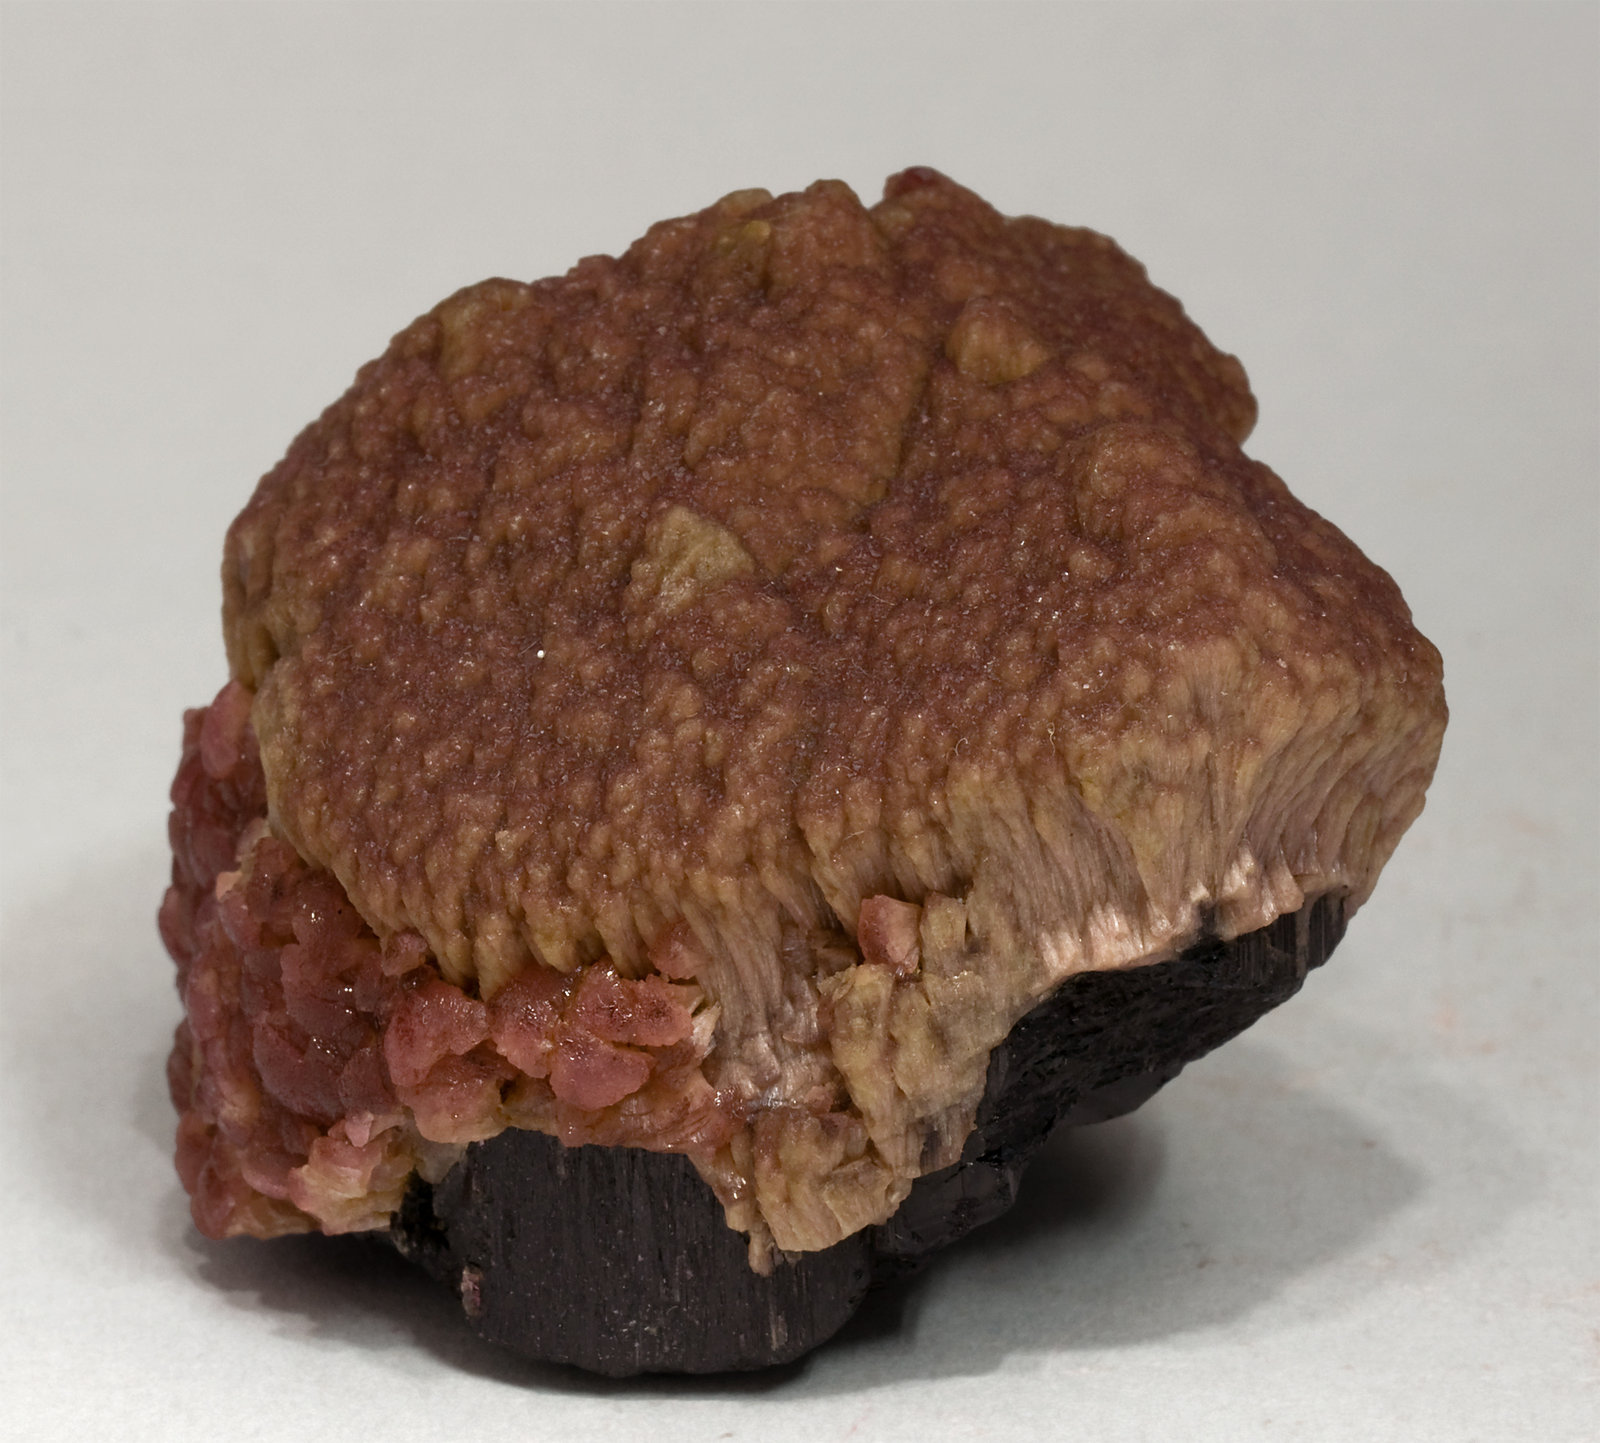 specimens/s_imagesV7/Elbaite-TC88V7s.jpg